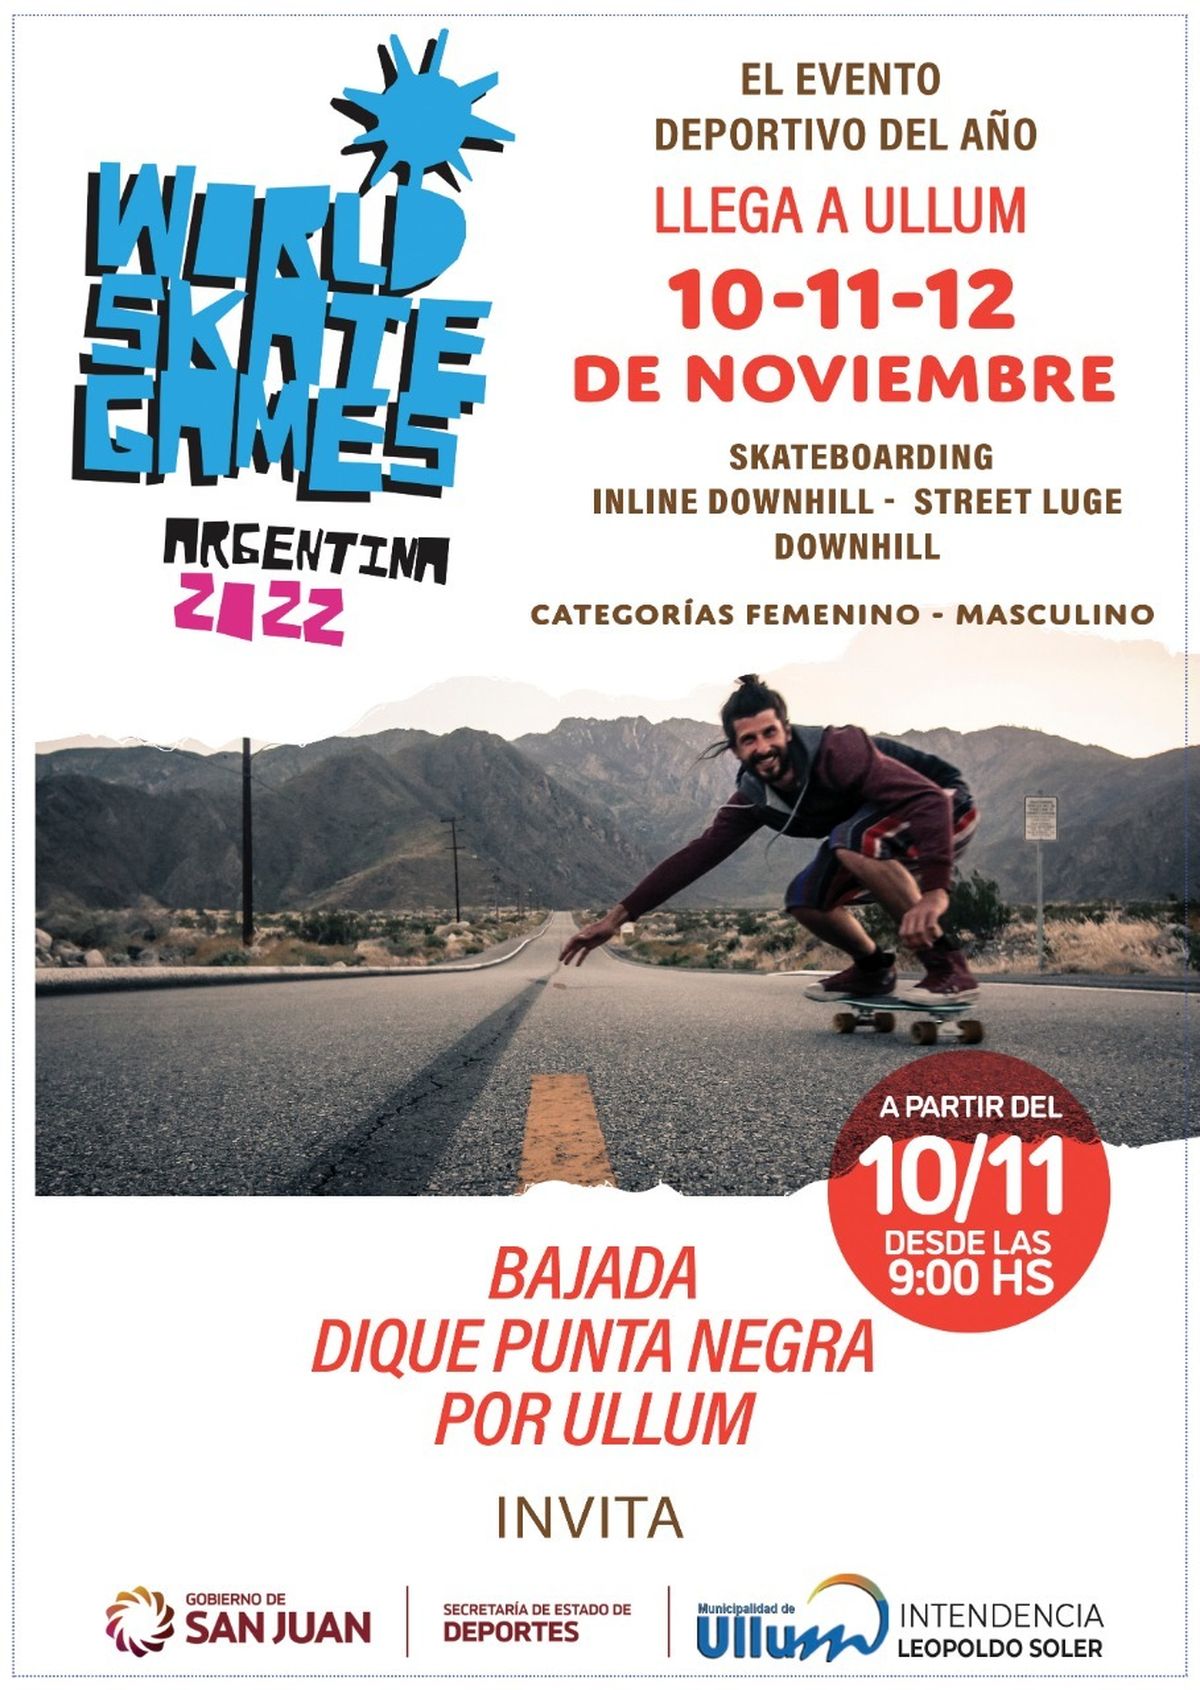 World Skate Games Argentina 2022 se vive en Ullum